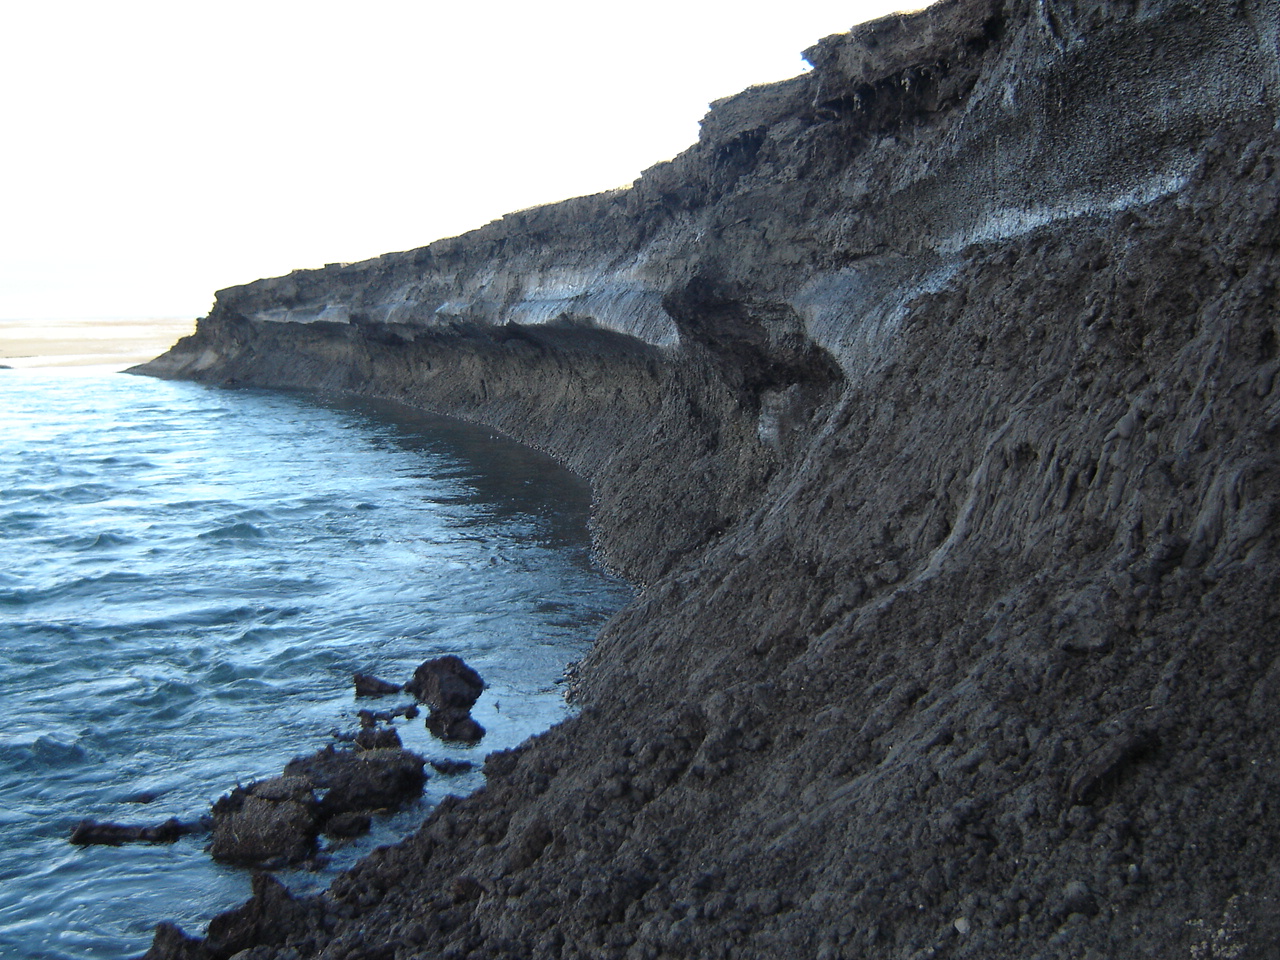 jagged cliffside near ocean